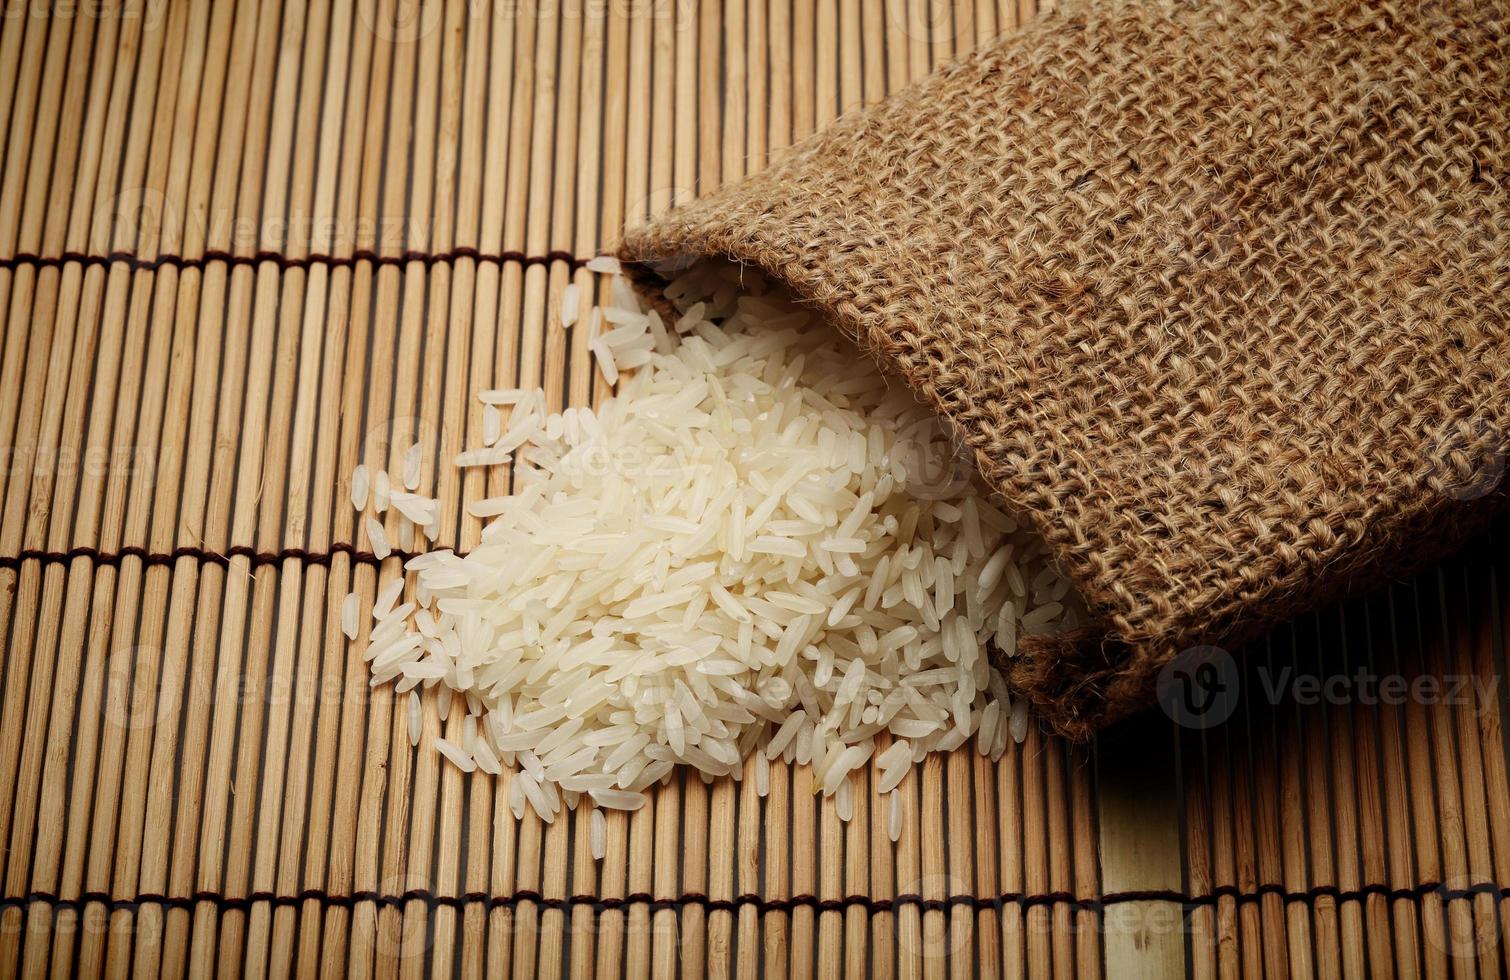 arroz cru branco em saco pequeno foto